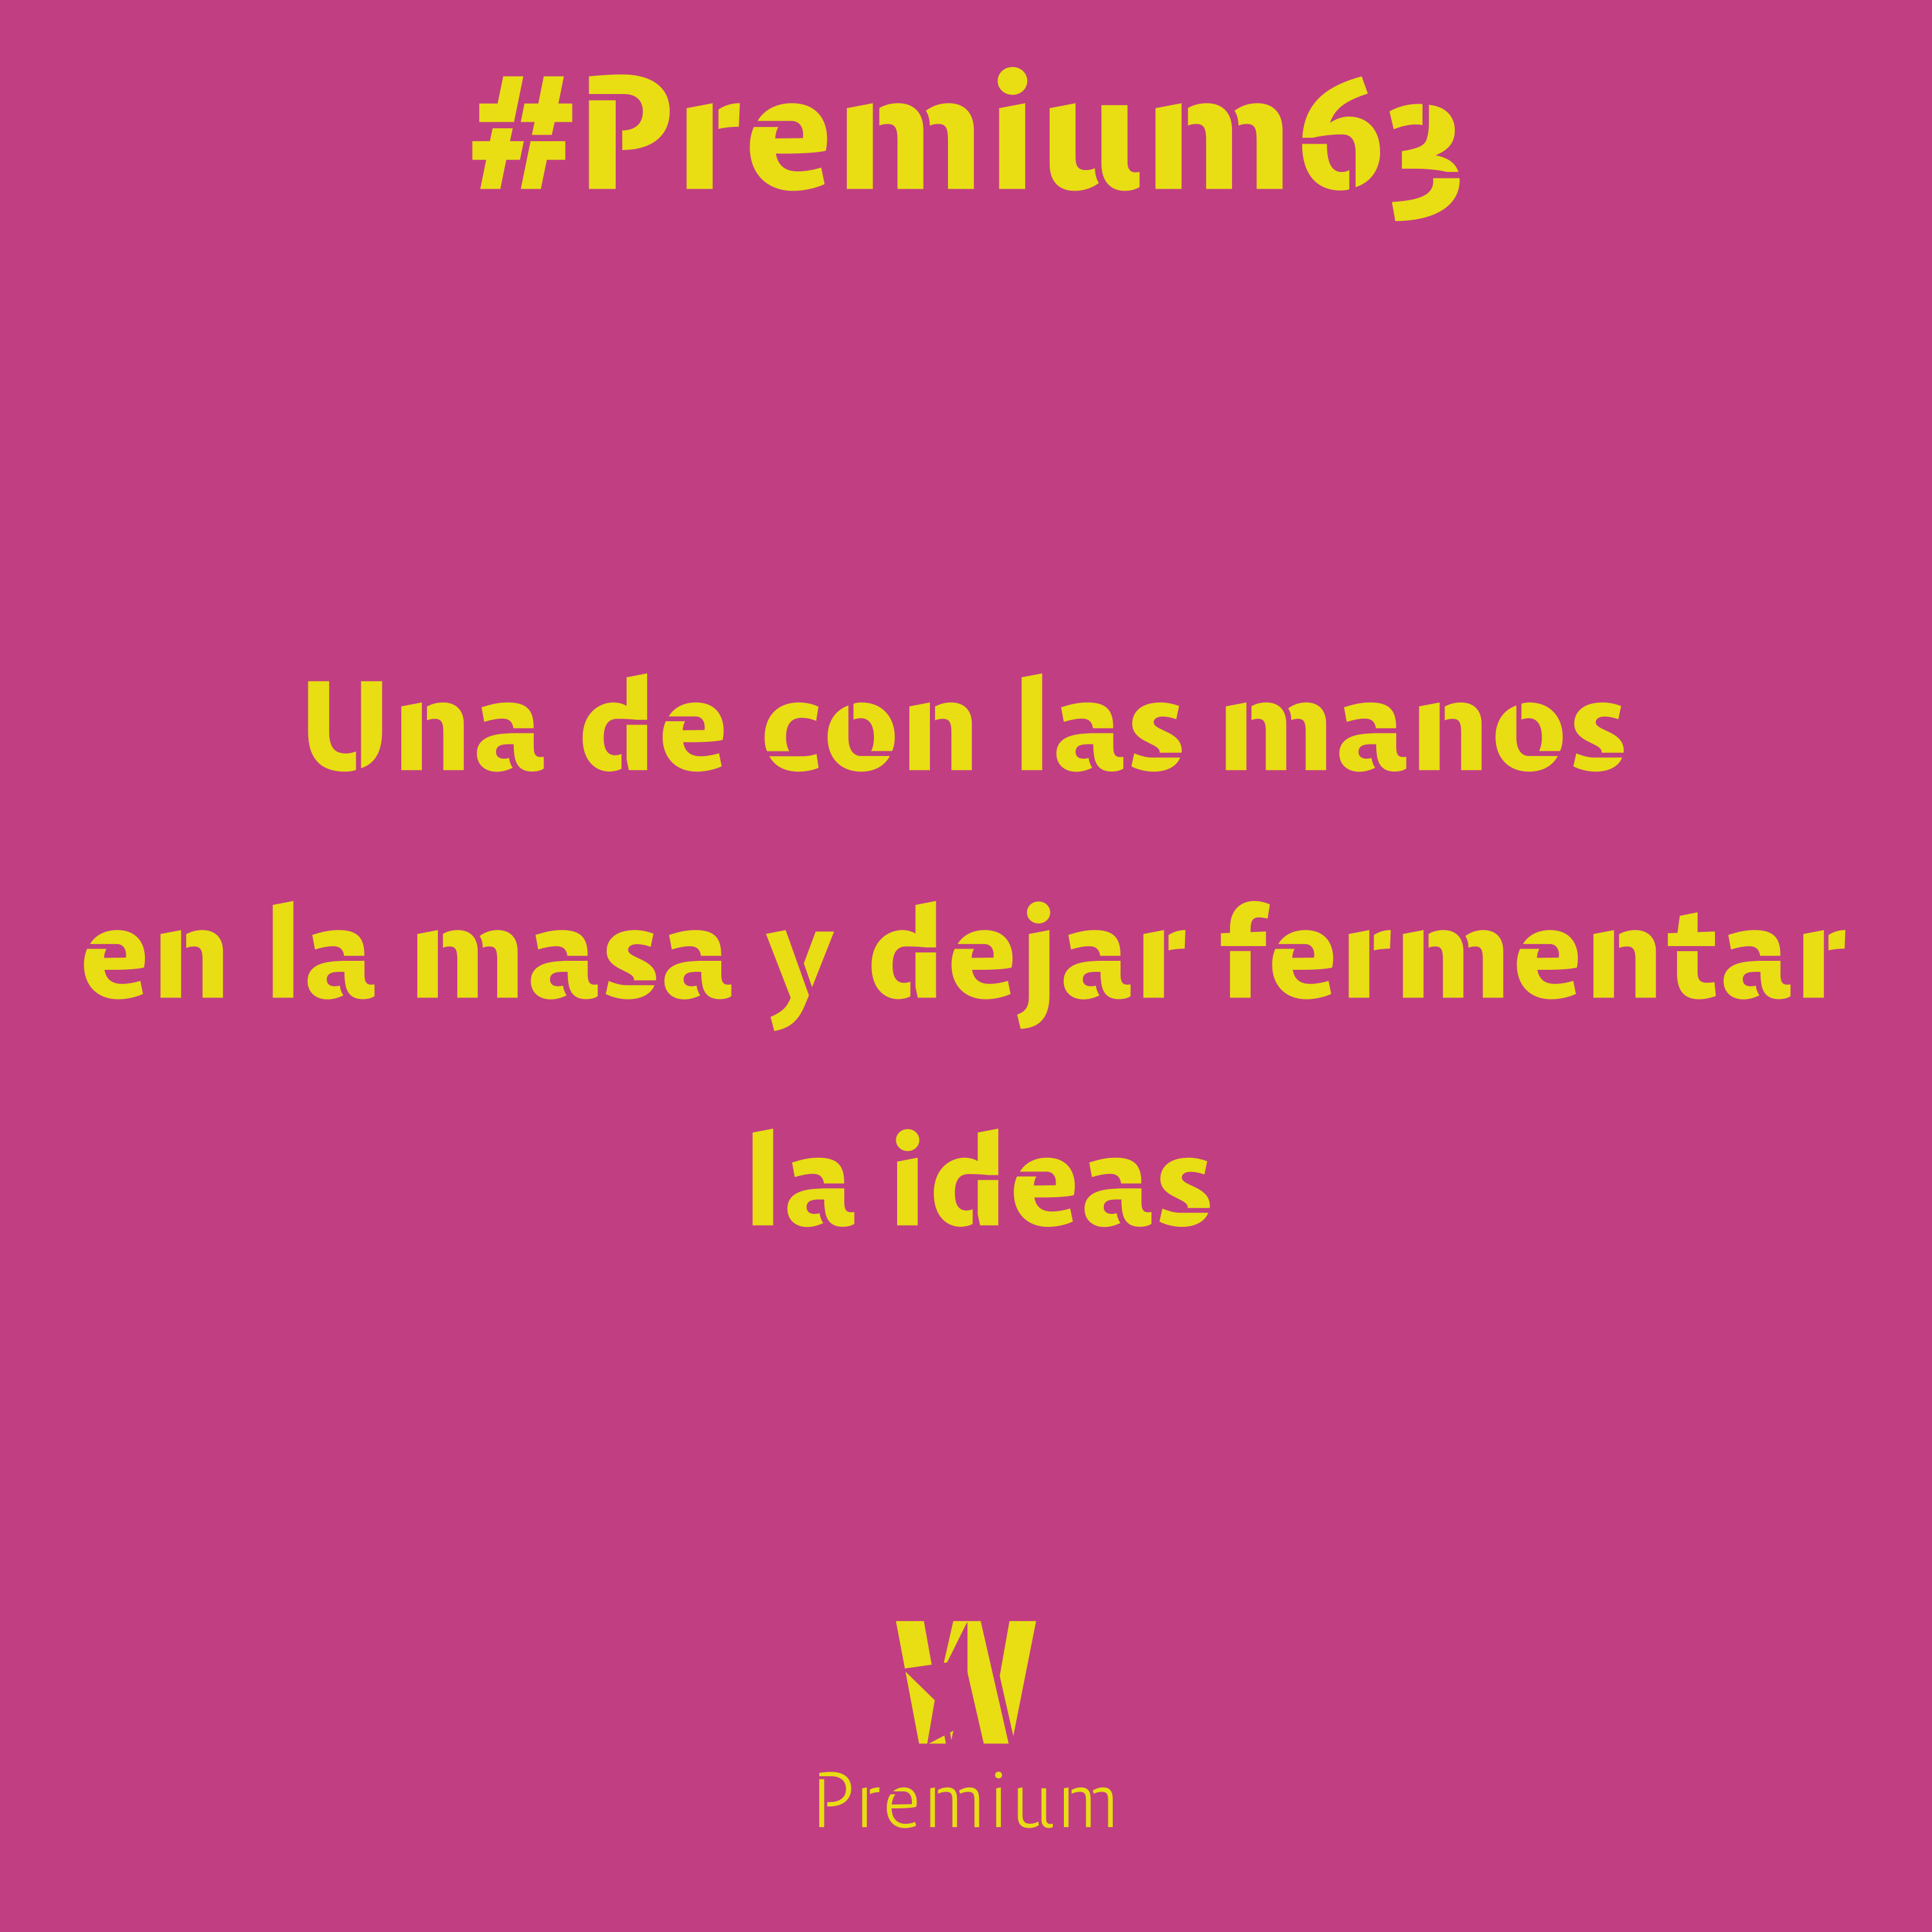 #Premium64 - Una de con las manos en la masa y dejar fermentar la ideas